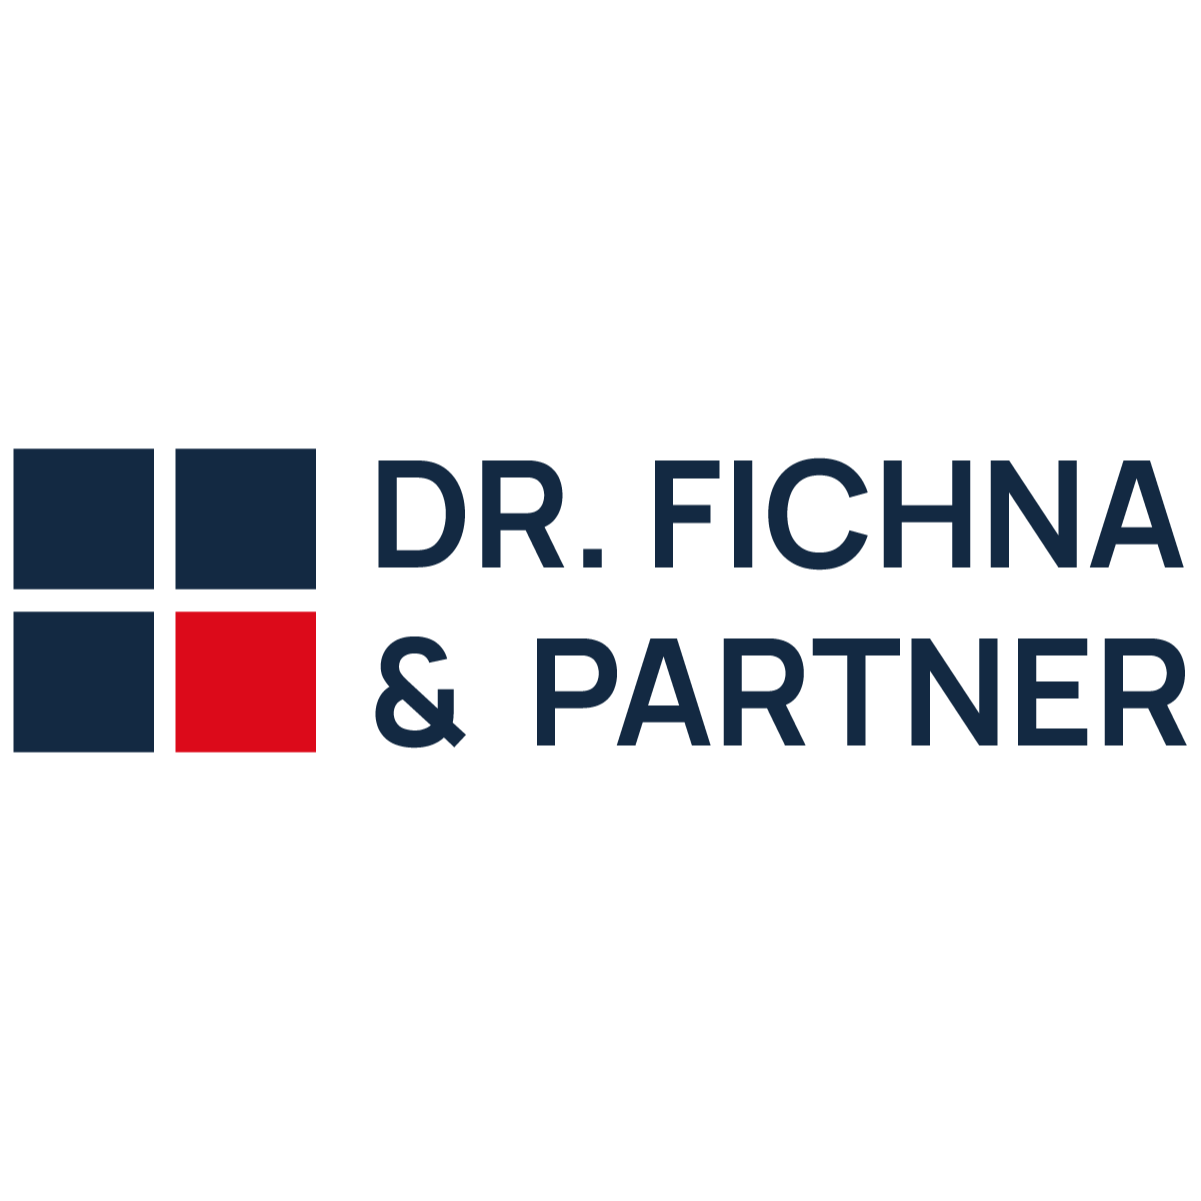 Dr. Fichna & Partner | Zahnärzte und Fachzahnärzte für Oralchirurgie | Ansbach Logo